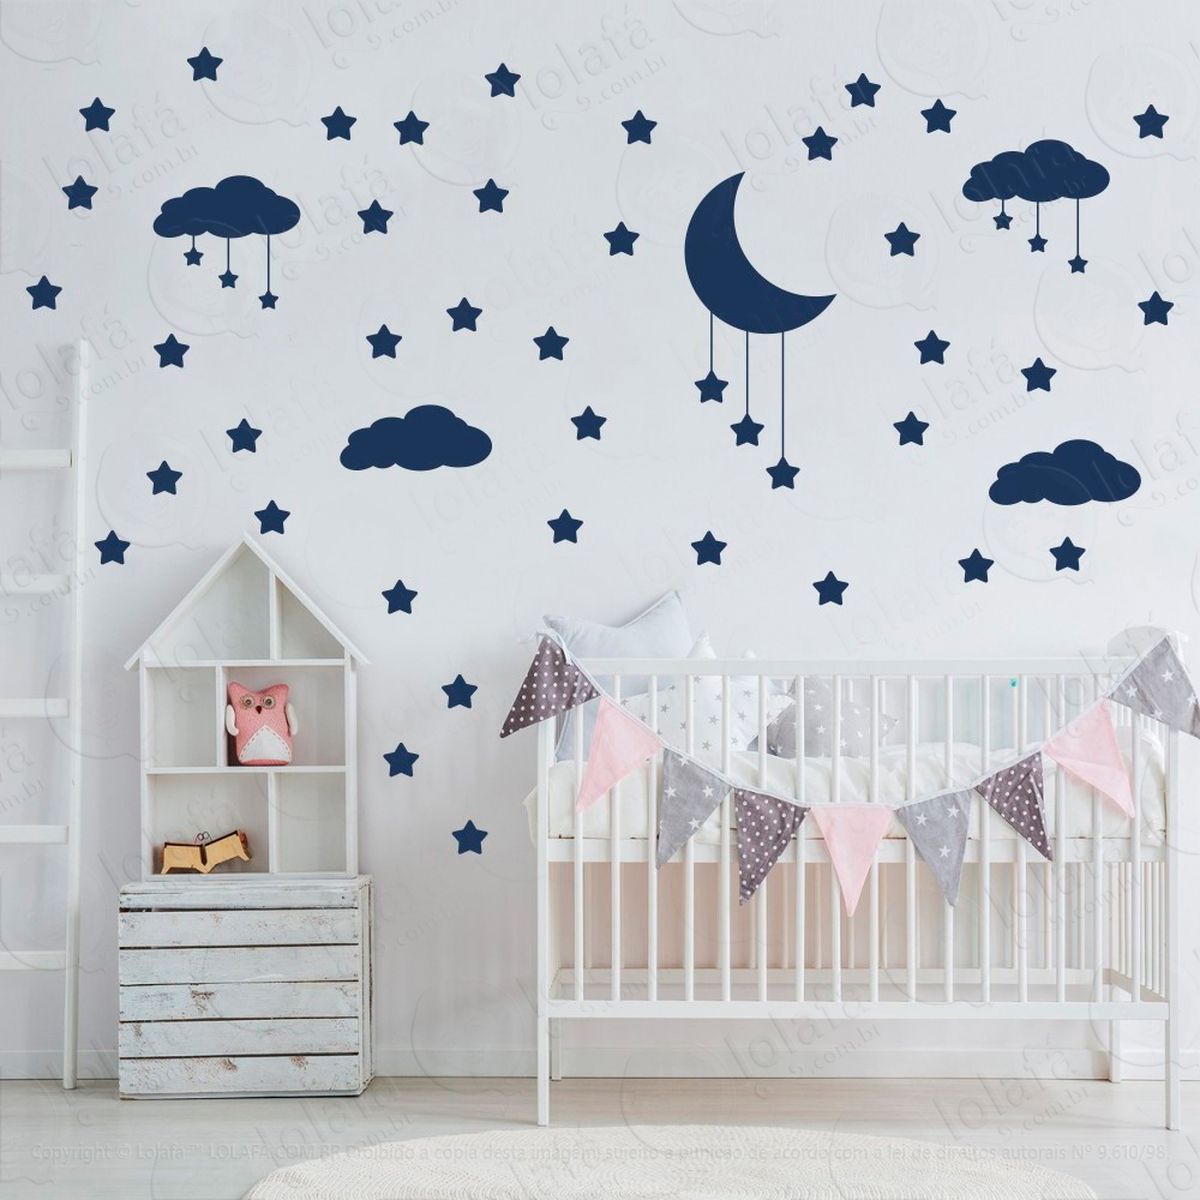 adesivos nuvens estrelas e lua 60 peças adesivos para quarto de bebê infantil - mod:743